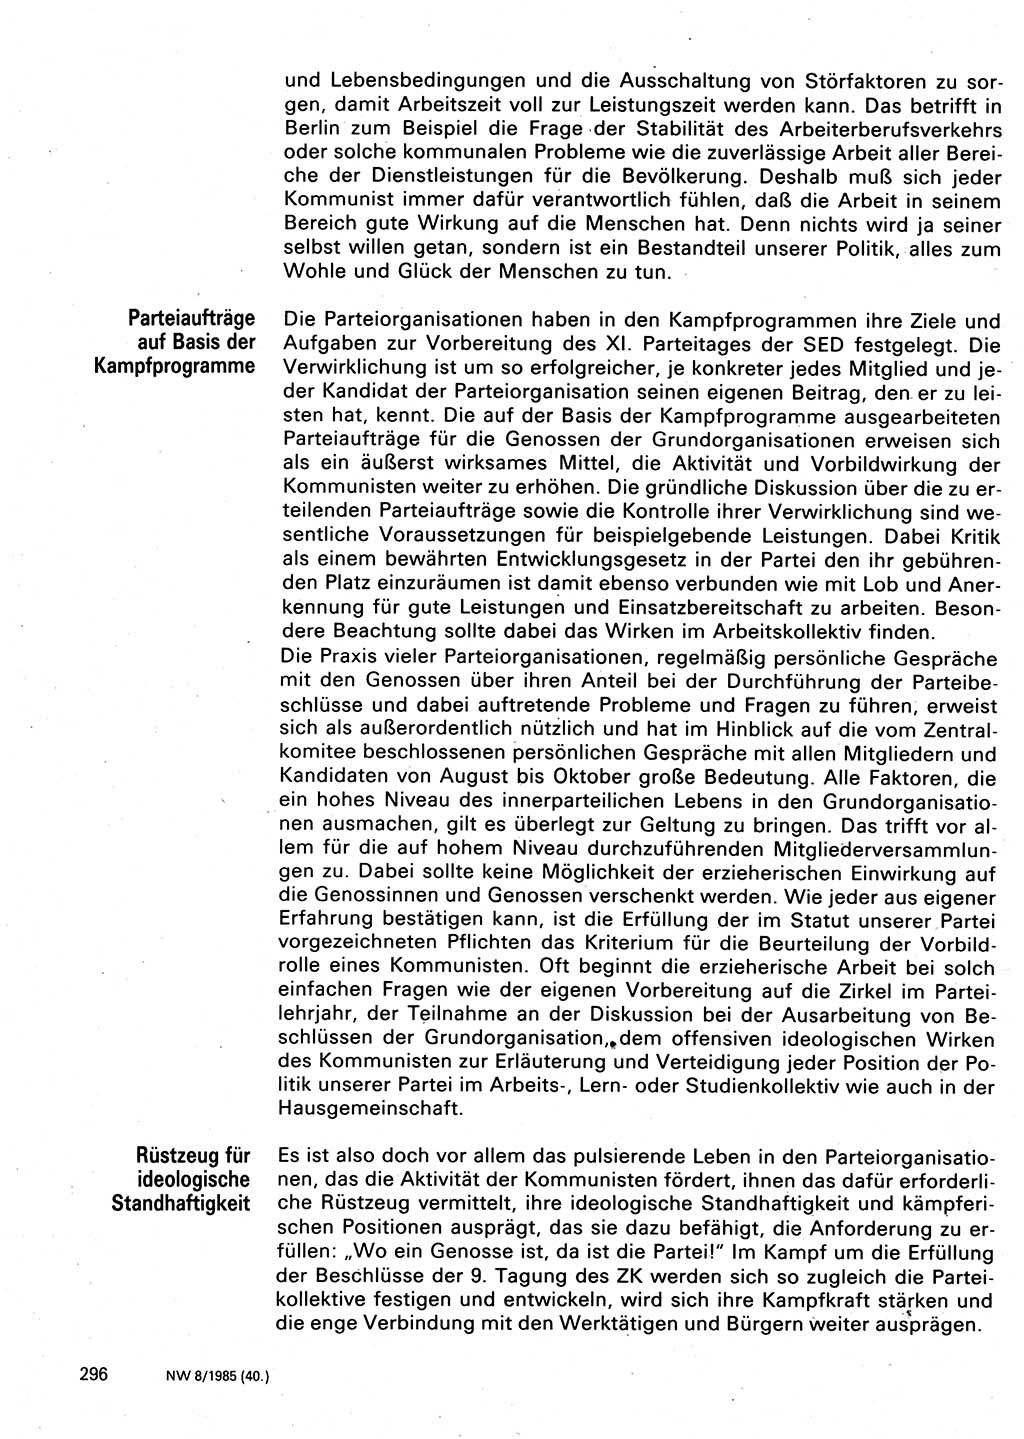 Neuer Weg (NW), Organ des Zentralkomitees (ZK) der SED (Sozialistische Einheitspartei Deutschlands) für Fragen des Parteilebens, 40. Jahrgang [Deutsche Demokratische Republik (DDR)] 1985, Seite 296 (NW ZK SED DDR 1985, S. 296)